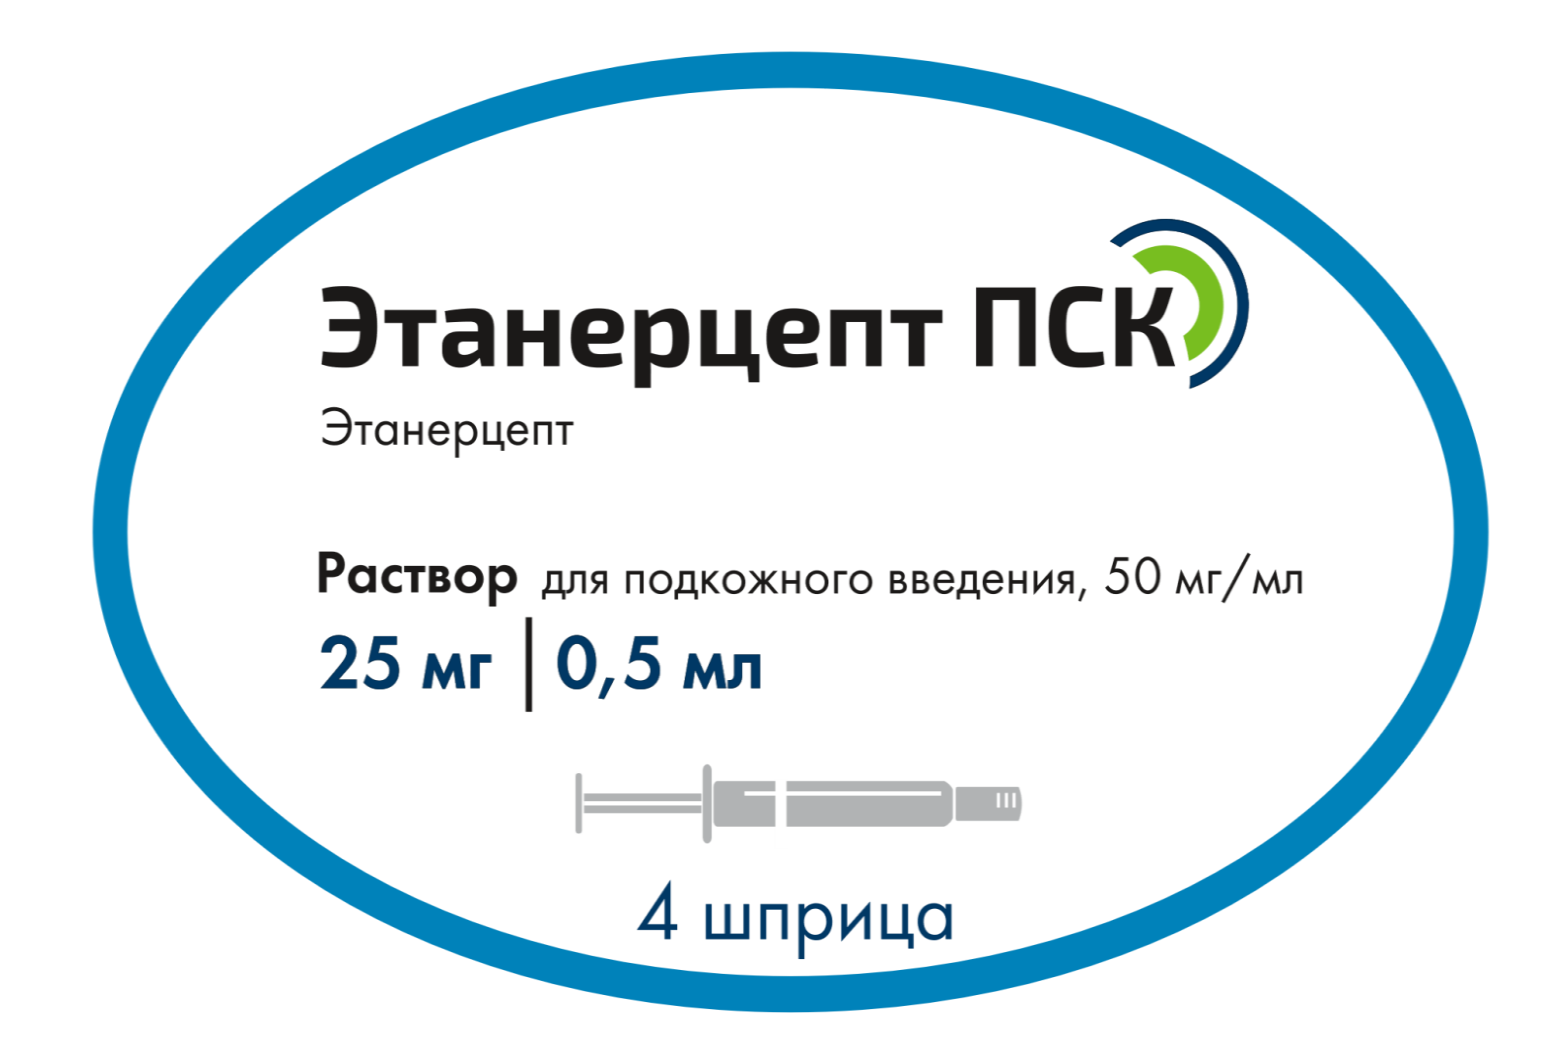 Первый российский биосимиляр «Этанерцепт ПСК» для лечения ревматических .